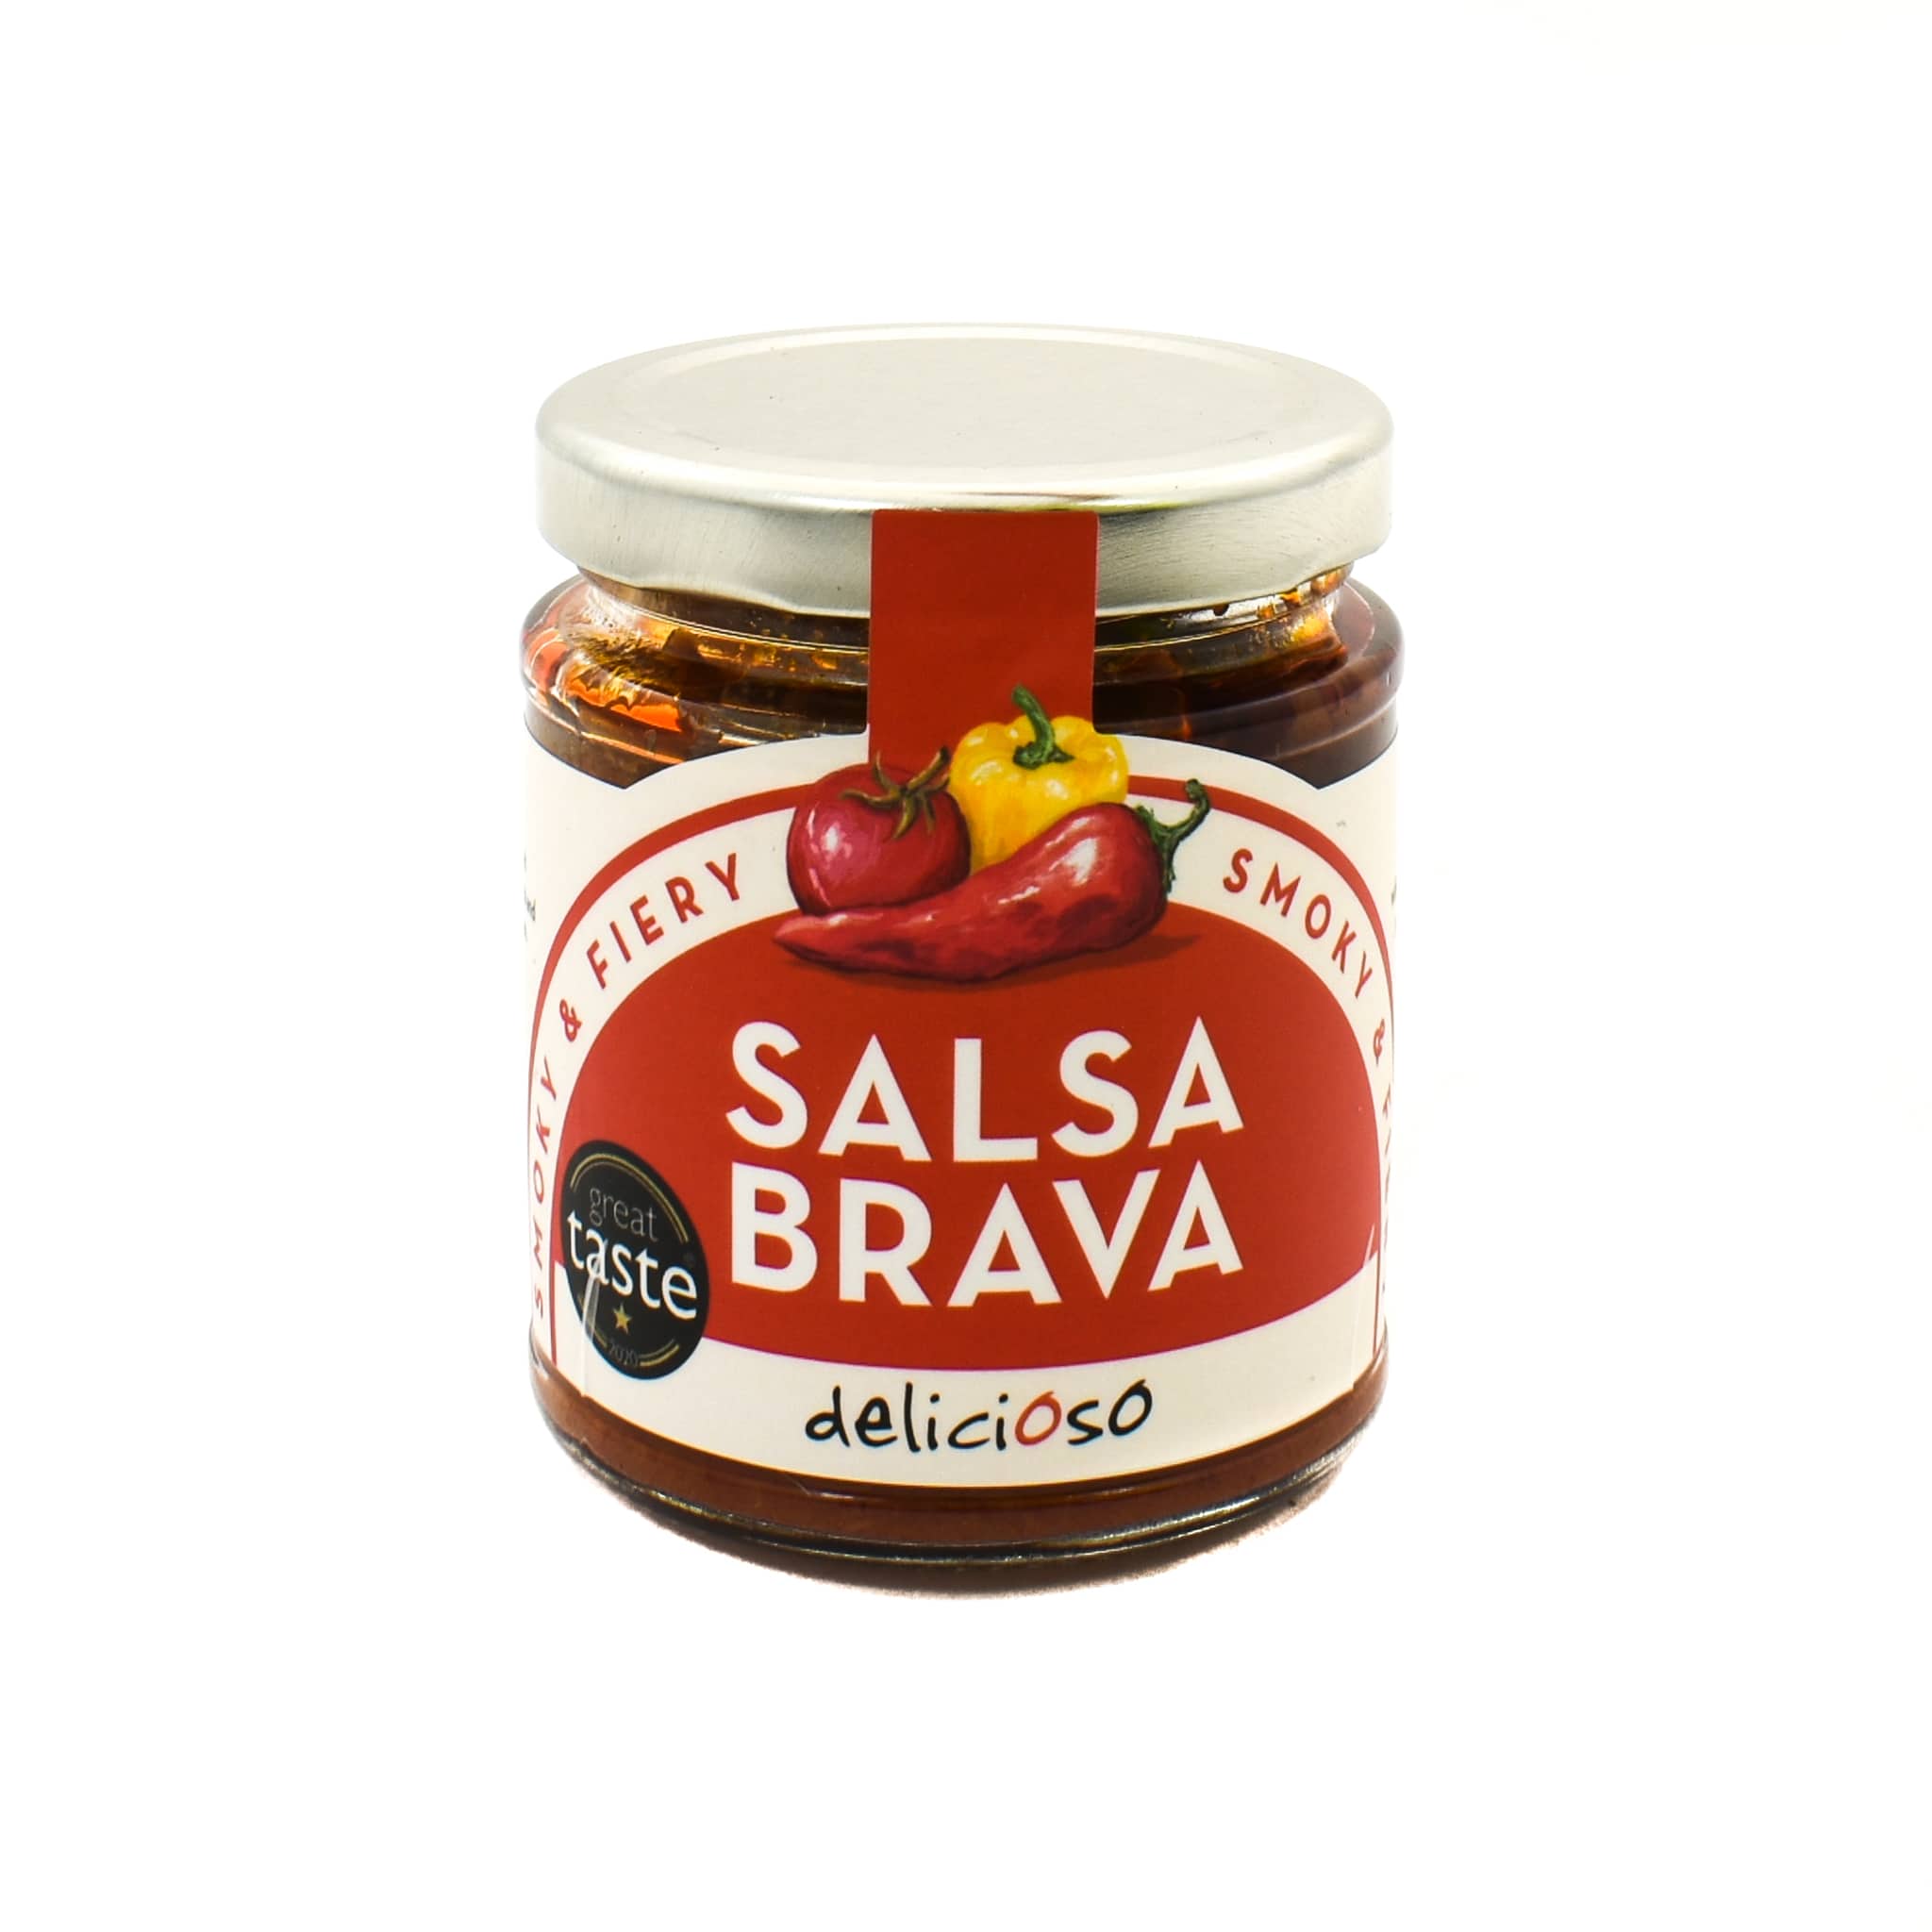 Delicioso Classic Spanish Salsa Gift Box 2x165g